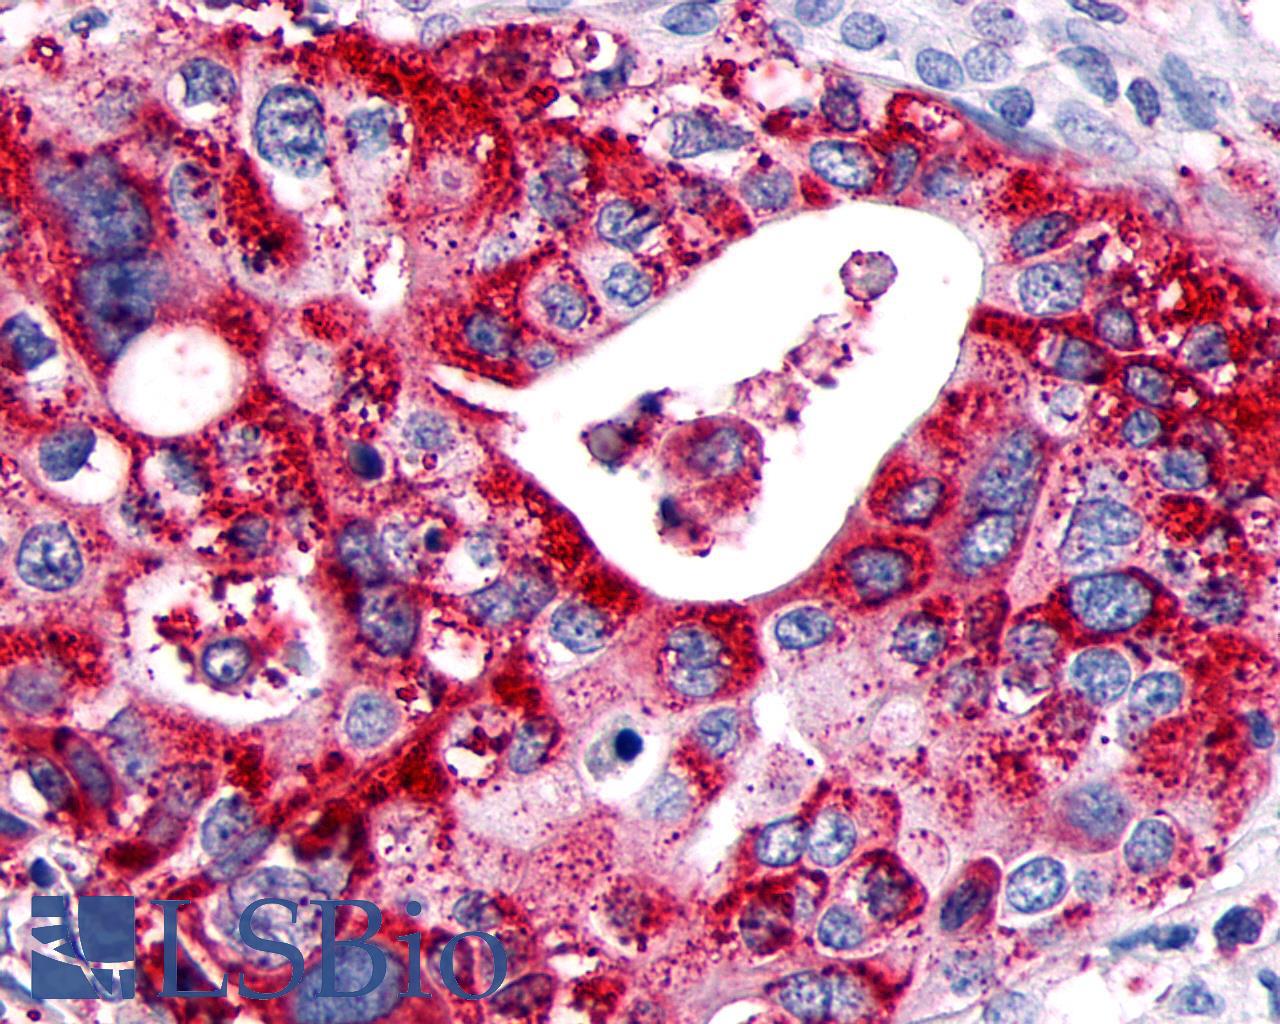 GPR89A Antibody - Pancreas, carcinoma